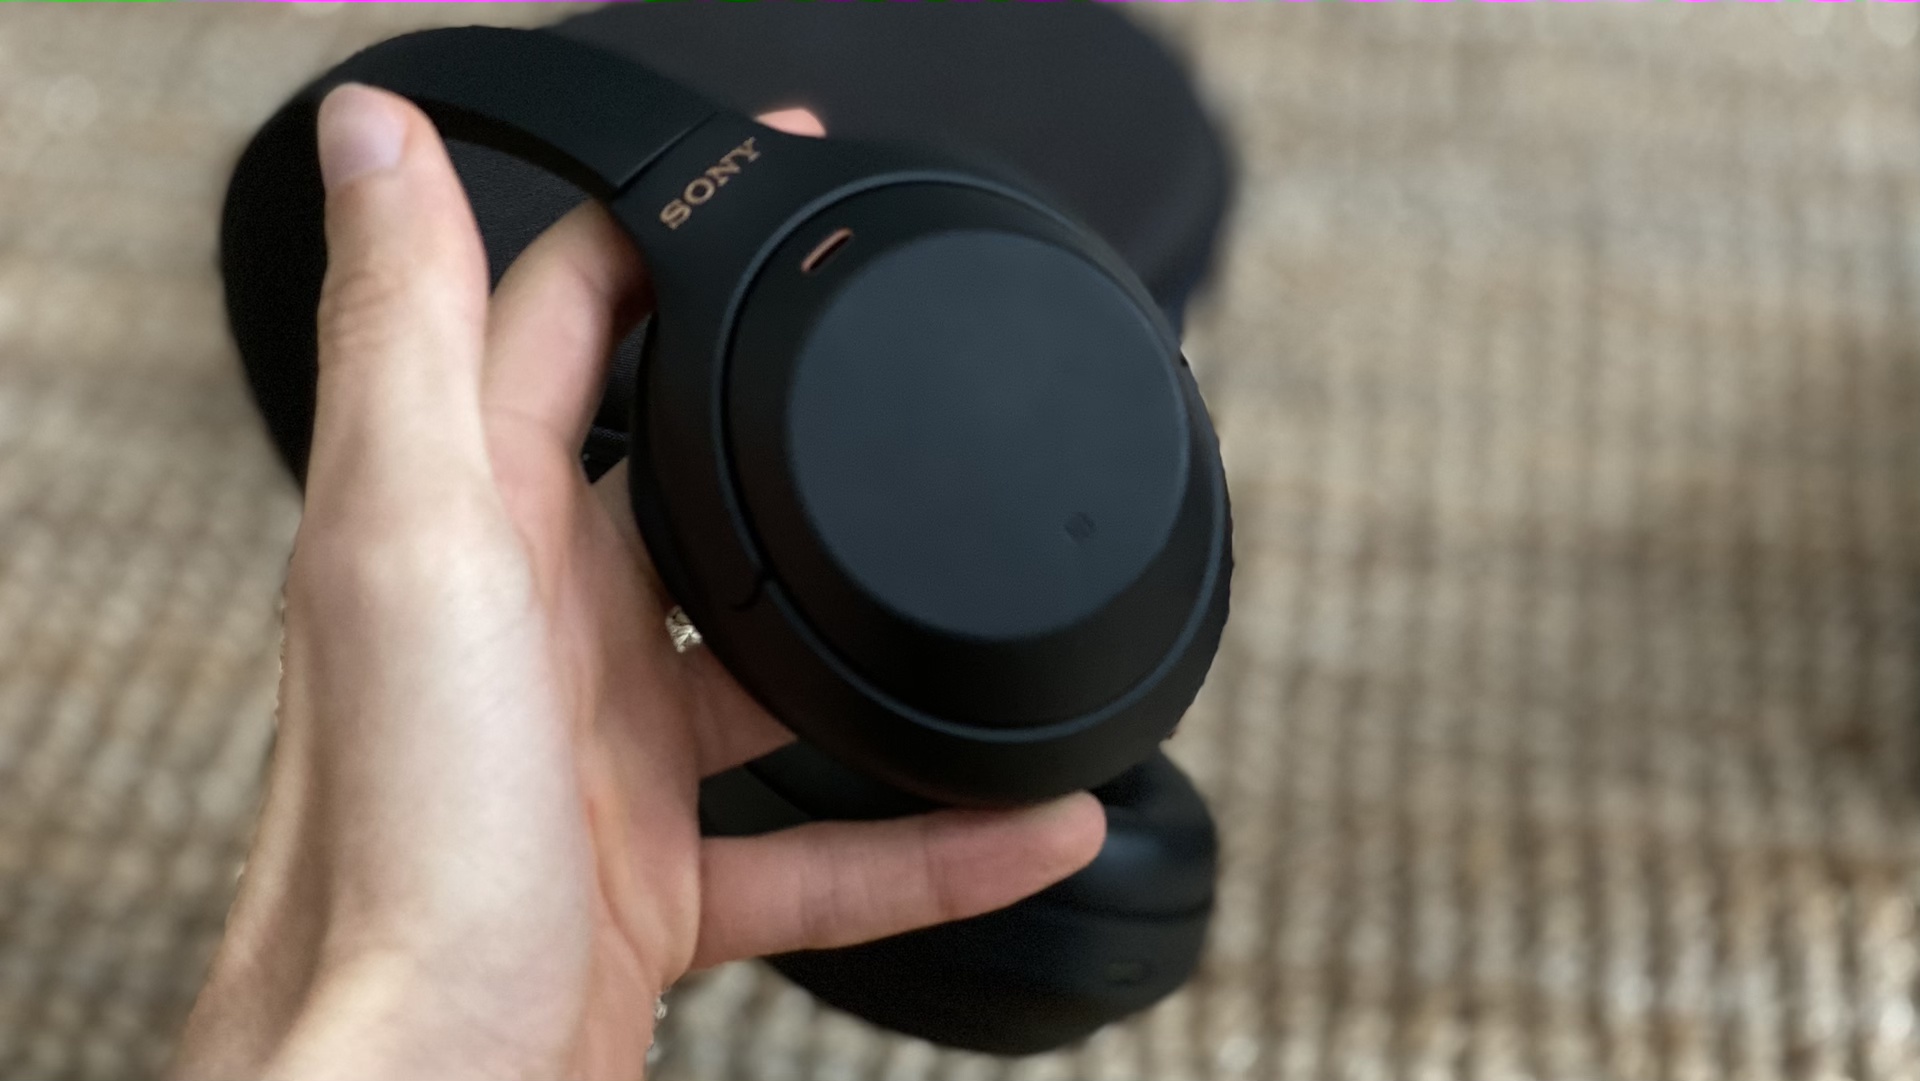 Sony WH-1000XM5 - Casque Bluetooth sans Fil à réduction de Bruit - 30  Heures d'autonomie - Optimisé pour Alexa et Google Assistant - avec Micro